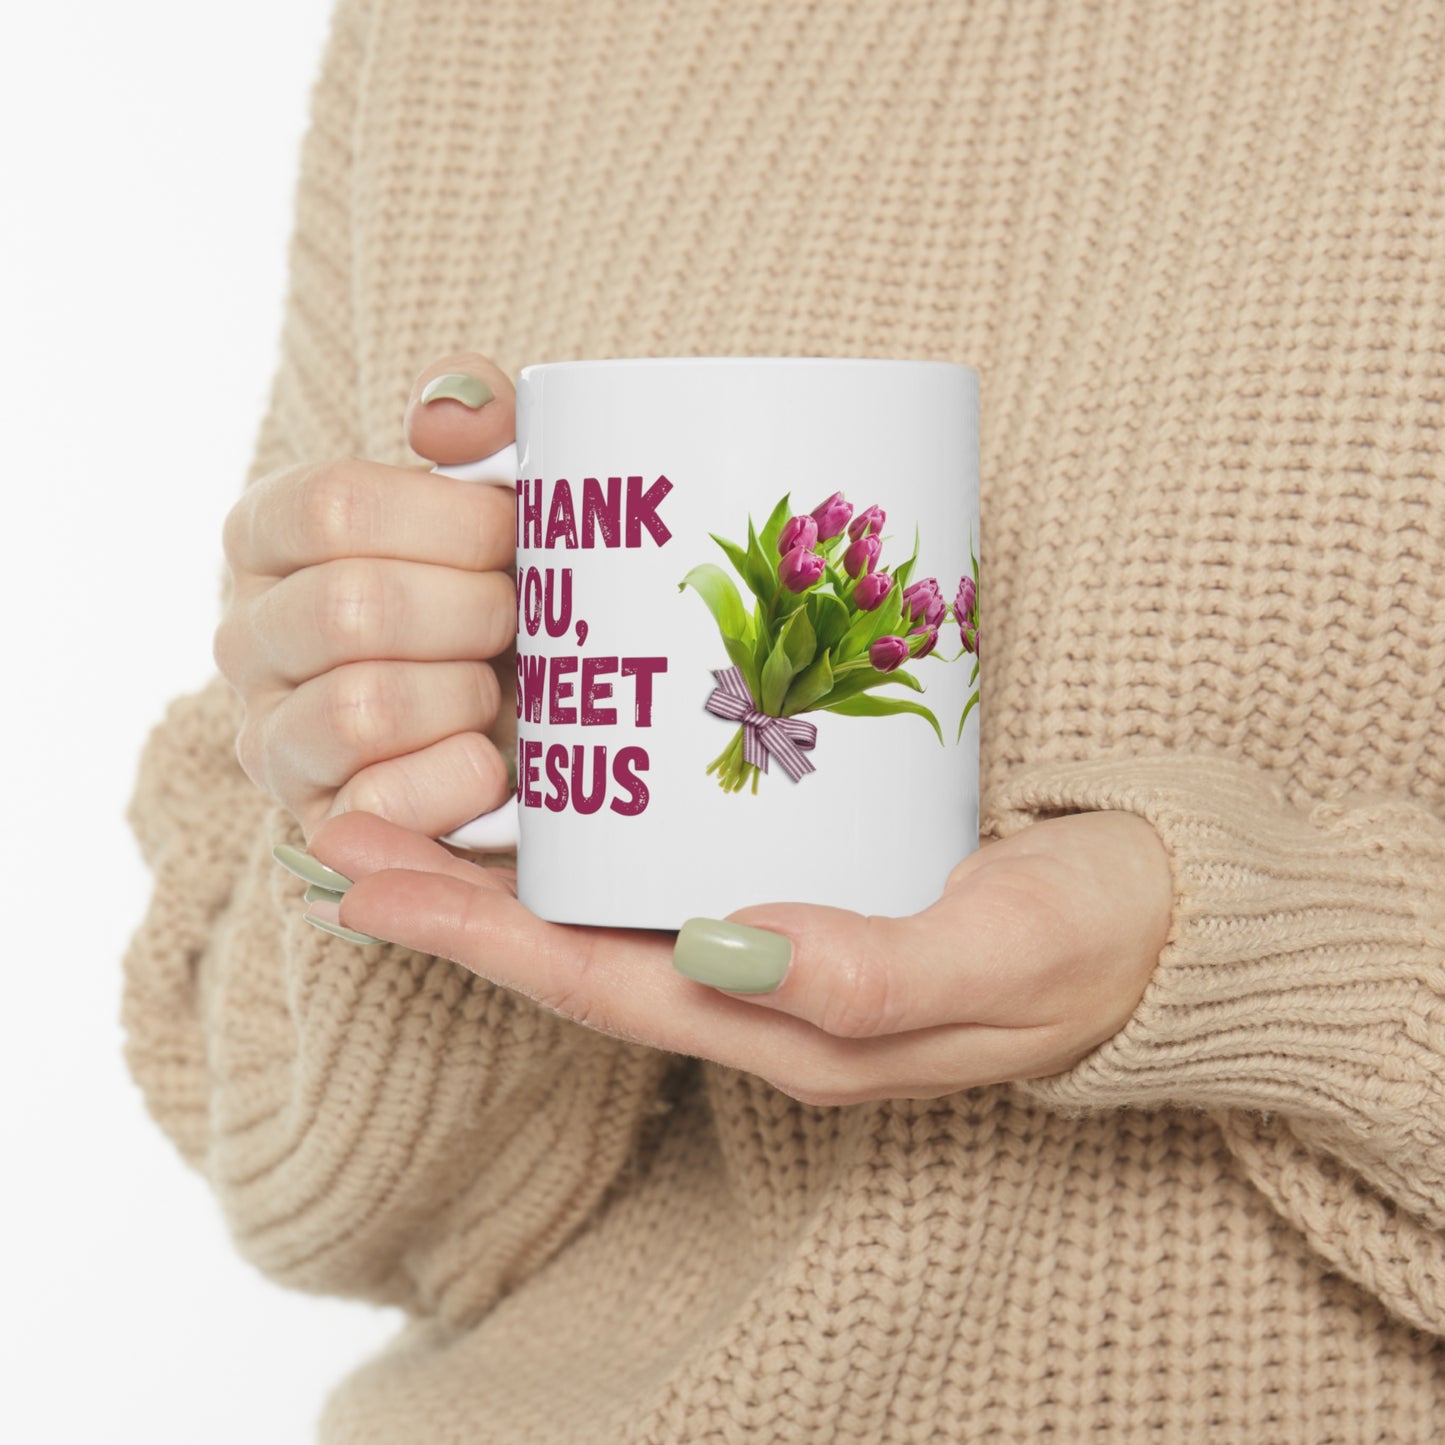 Christian Mug Thank you, Sweet Jesus, White Ceramic Mug 11oz Embellished With Pink Tulip Bouquet